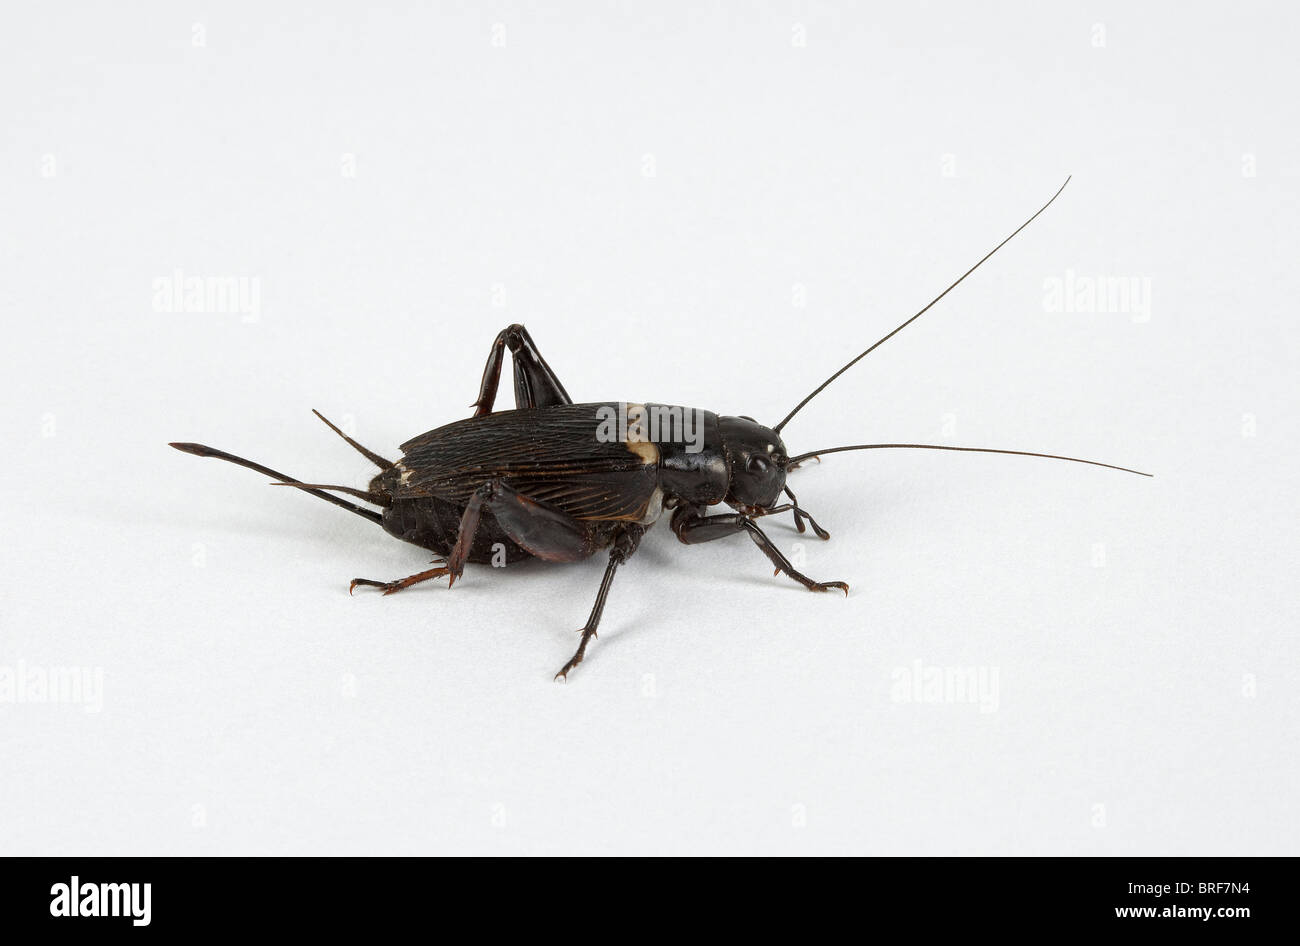 Gryllus assimilis (common black cricket) against white background Stock Photo